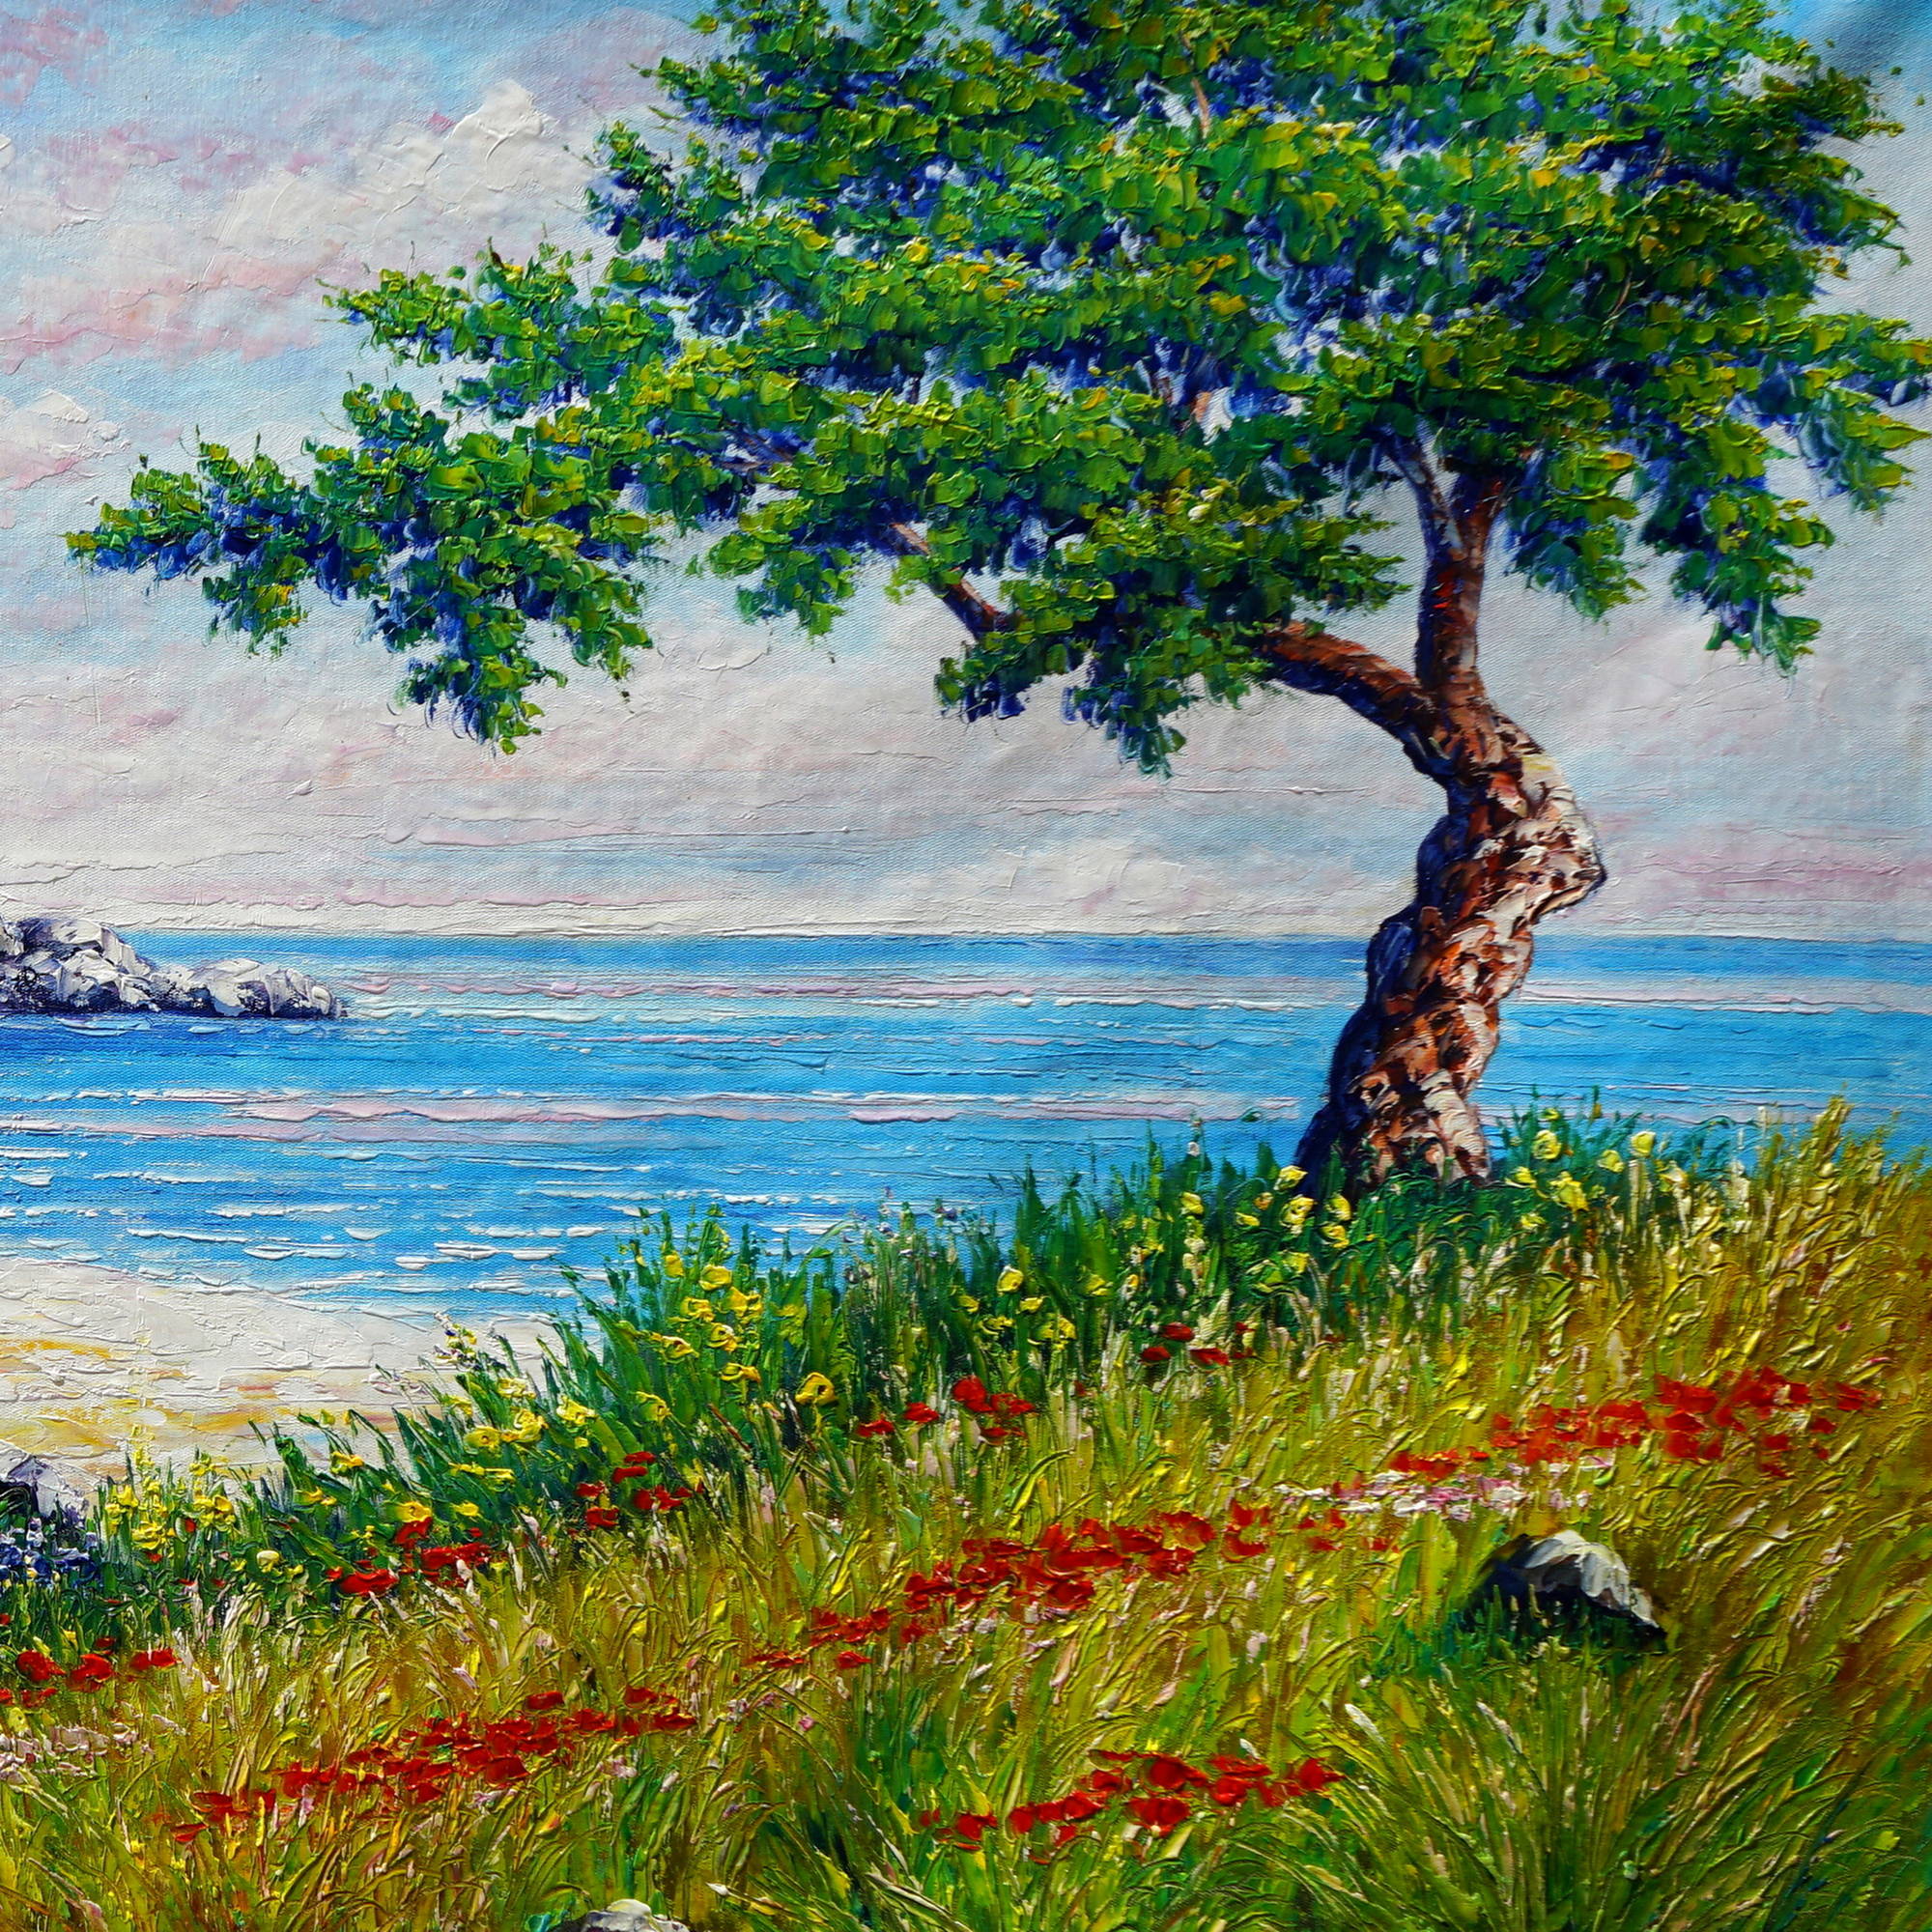 Bateau de plage paysage marin peint à la main 90x180cm